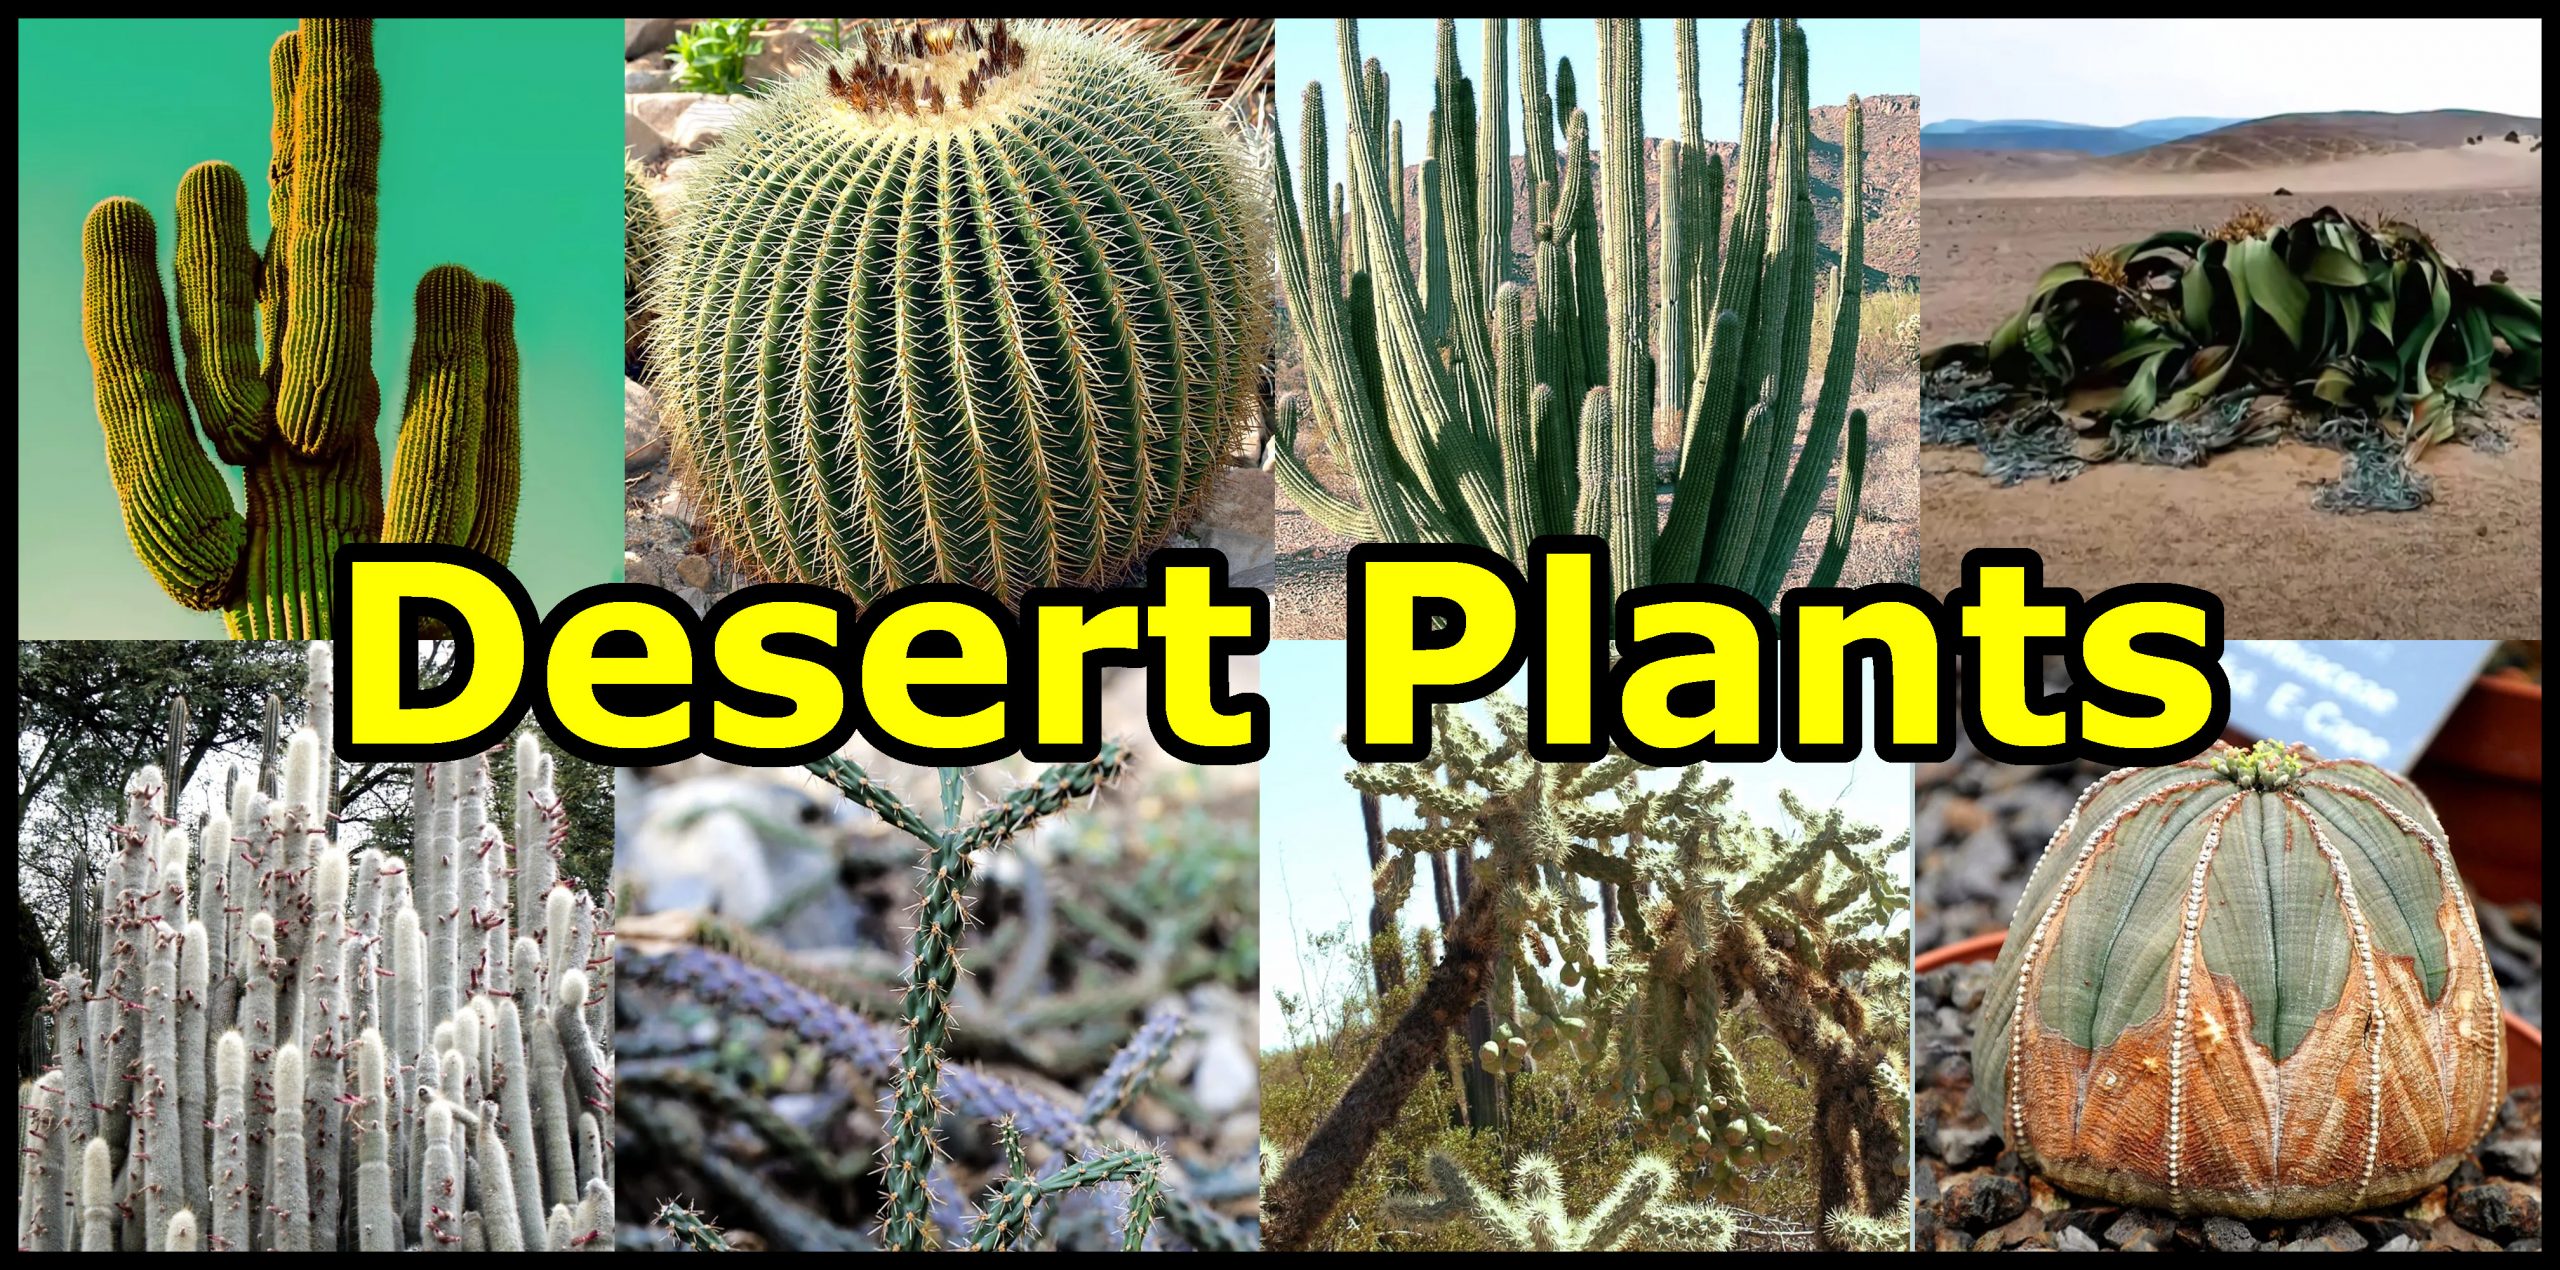 Növények, amelyek a sivatagban nőnek